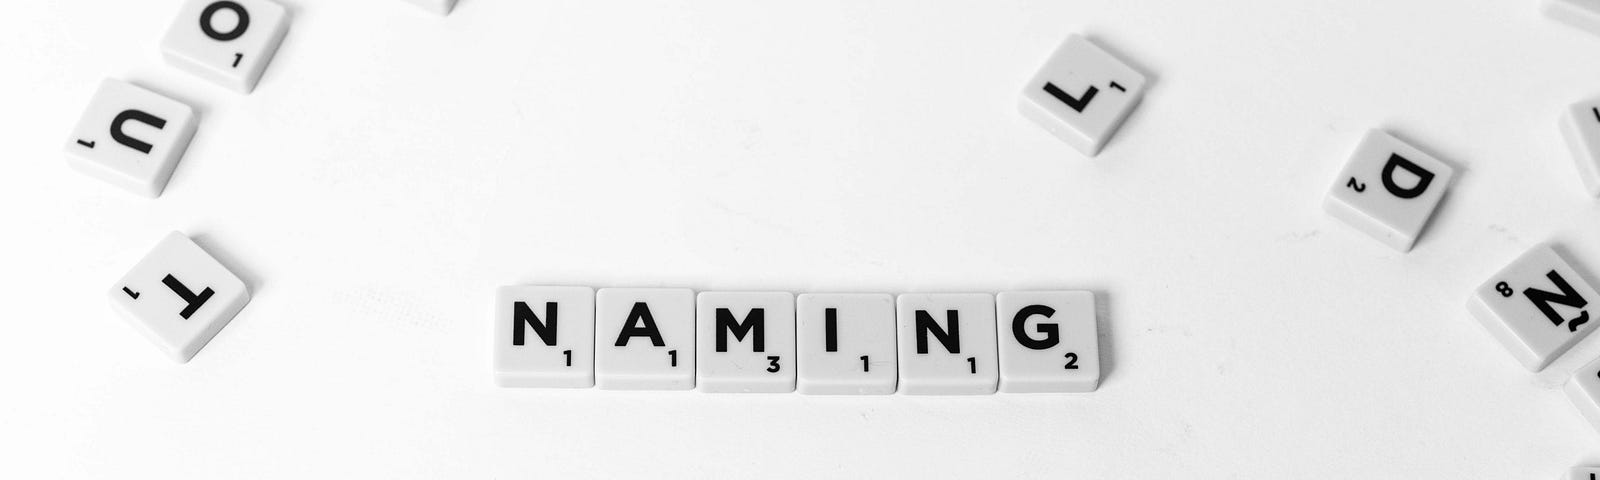 Peças do jogo Scrabble ordenadas de forma que se leia Naming.